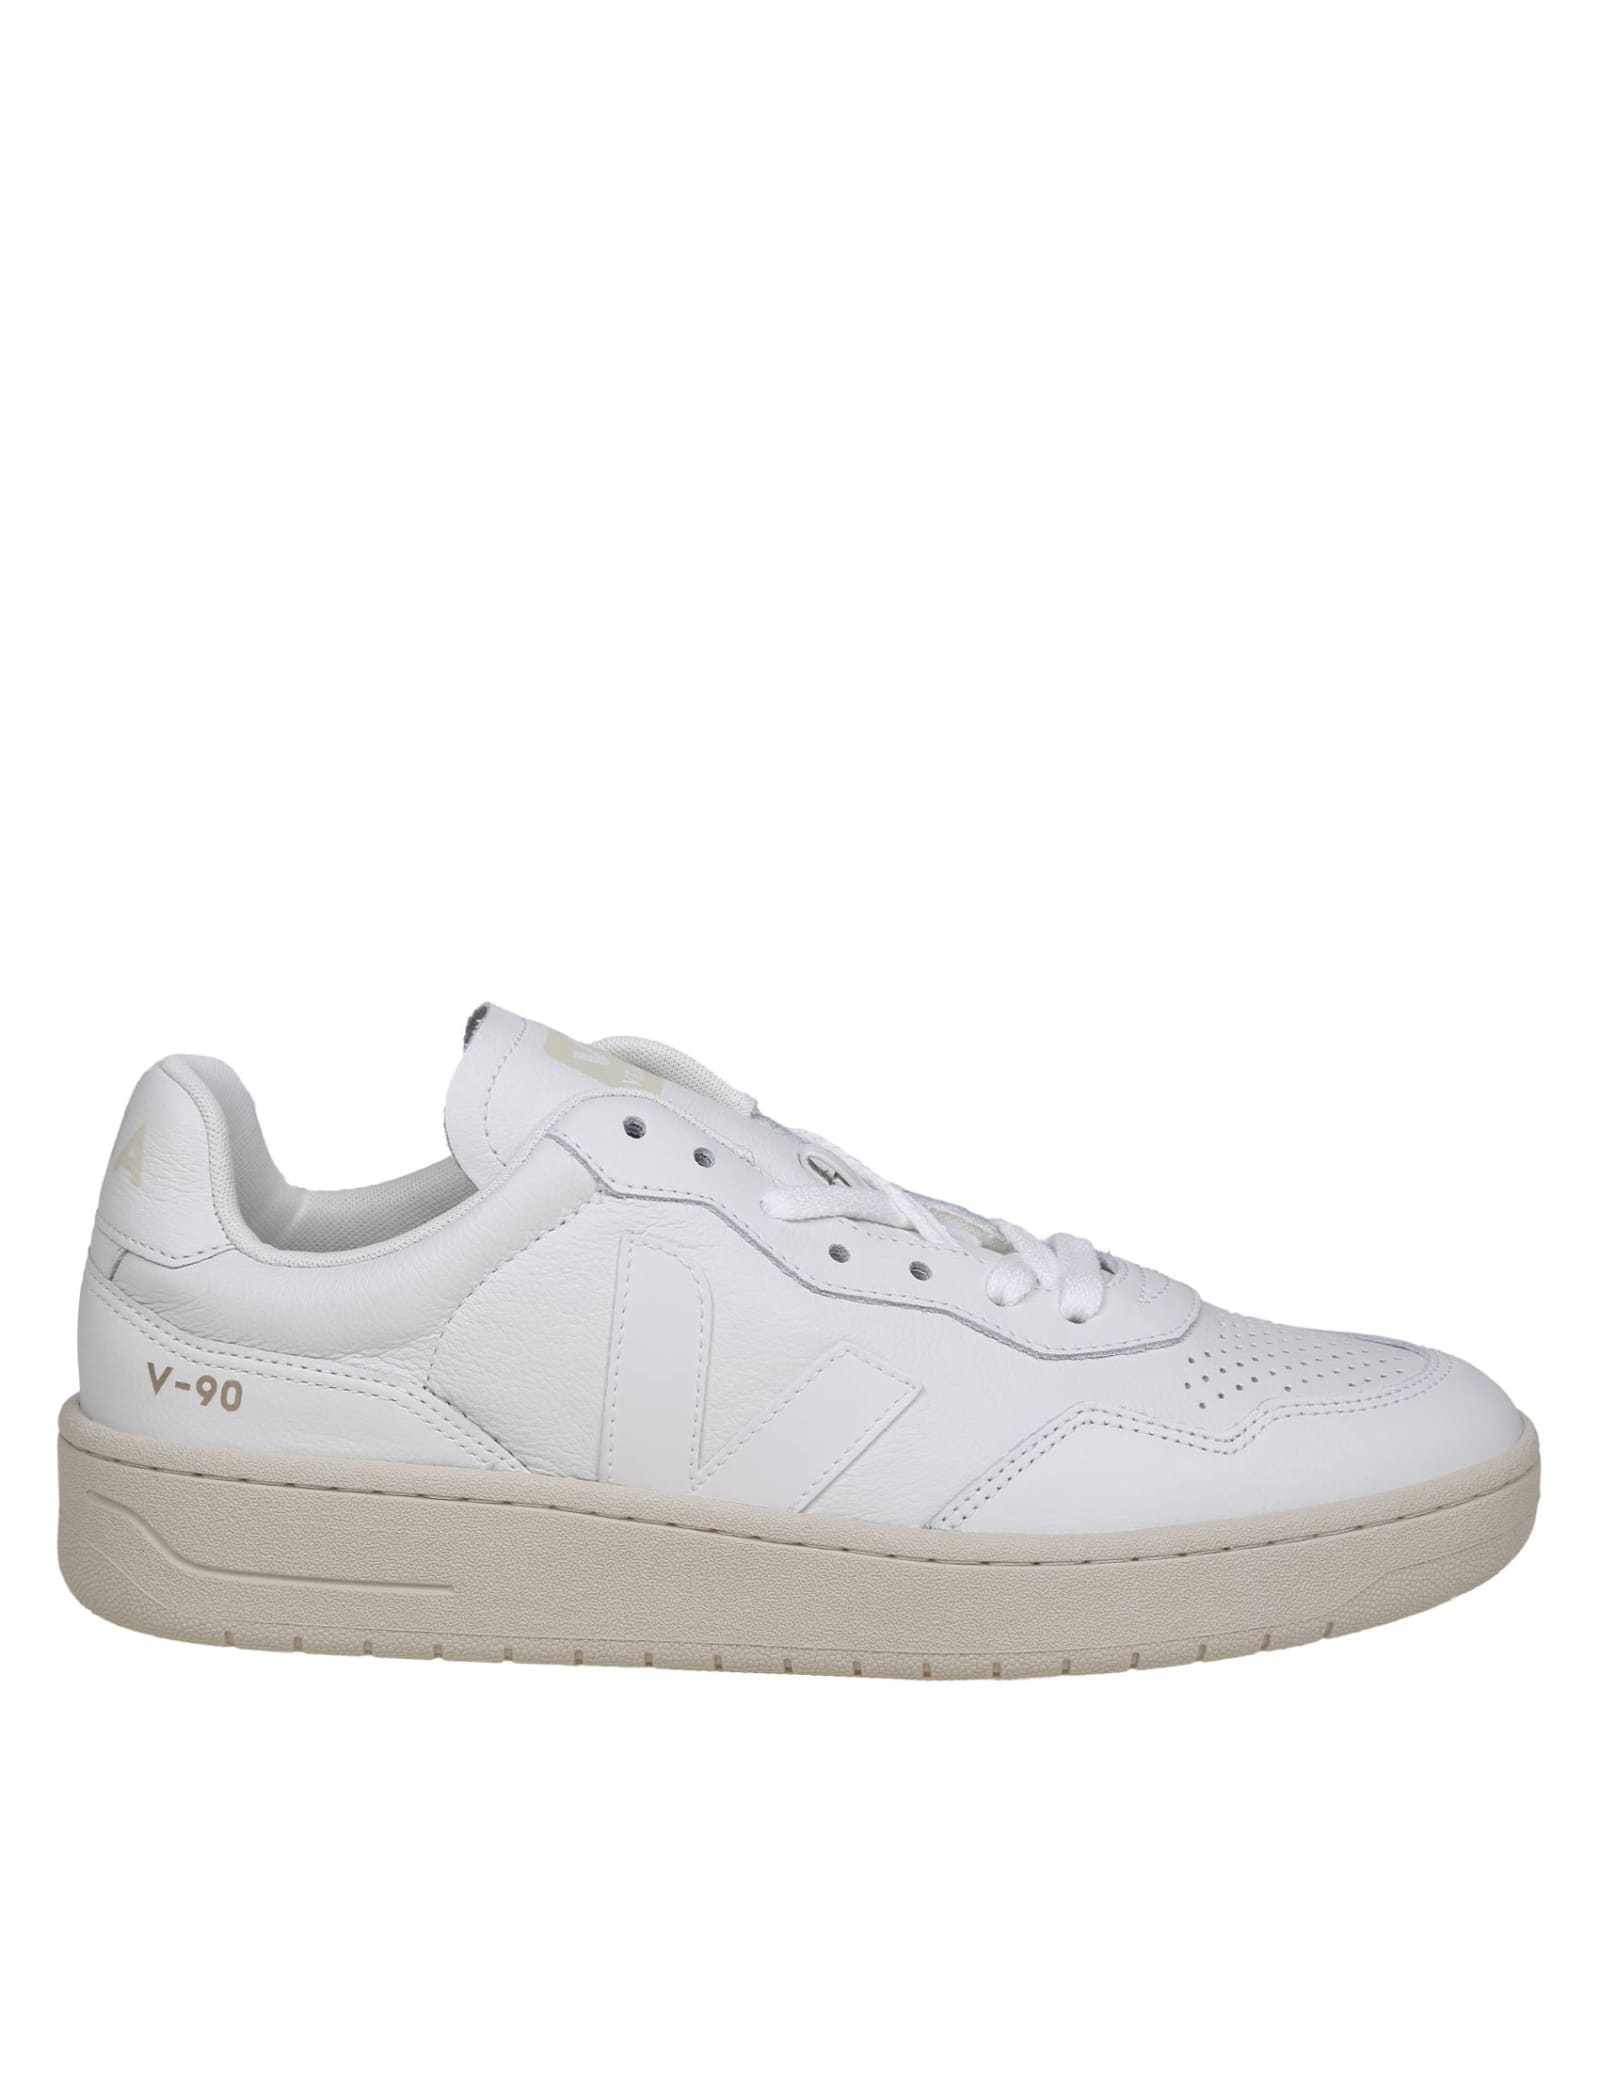 Shop Veja V 90 Sneakers In White Leather